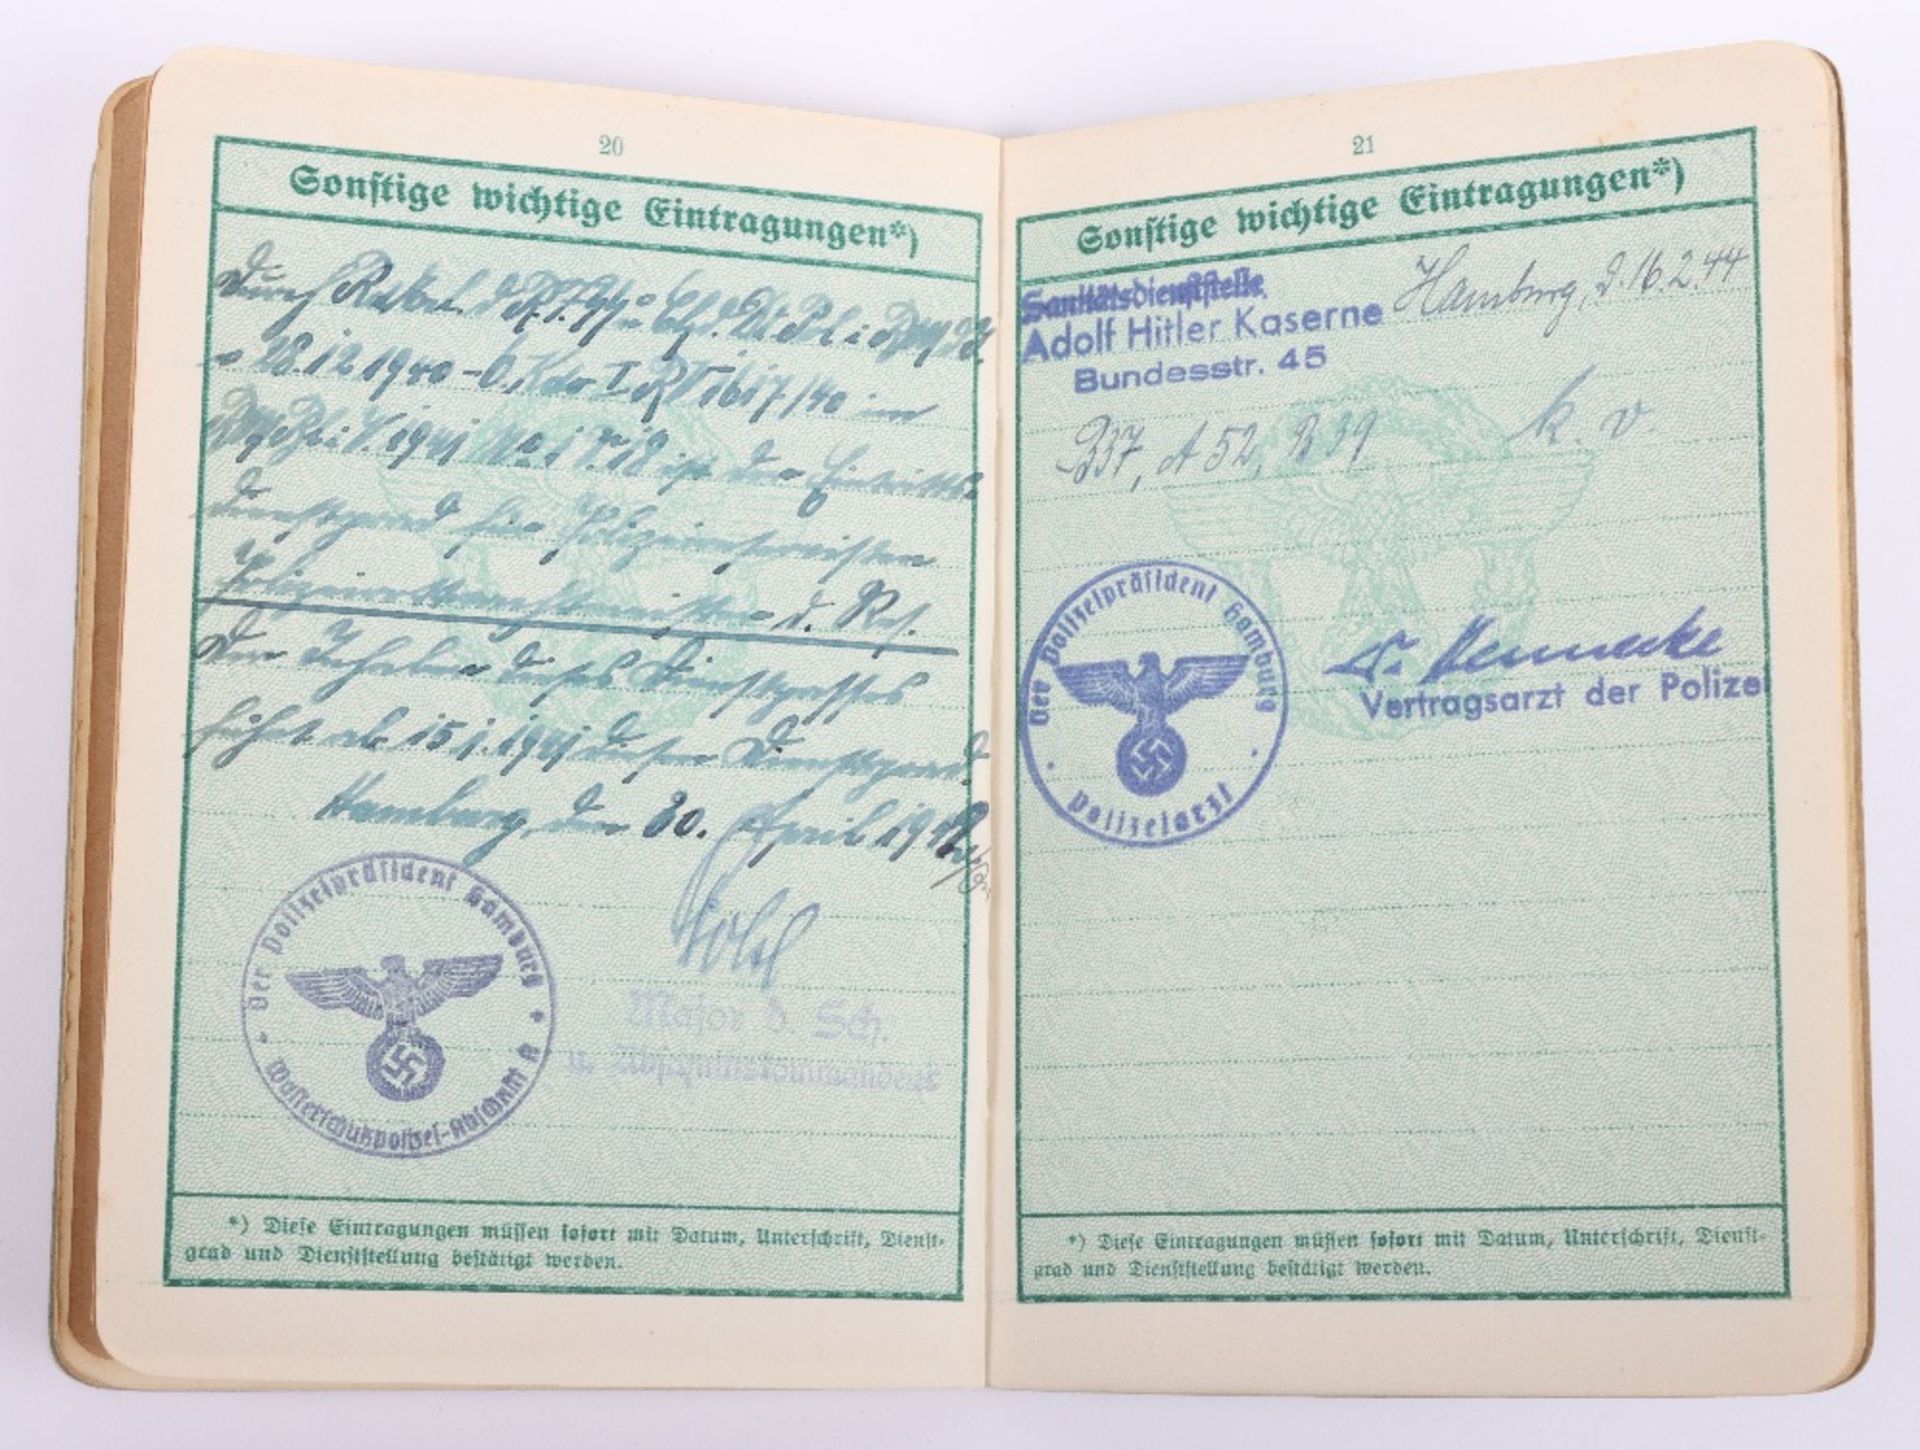 WW2 German Police service book / Polizei Dienstpass toL. Fiedler, Hamburg 1942 - Image 11 of 11